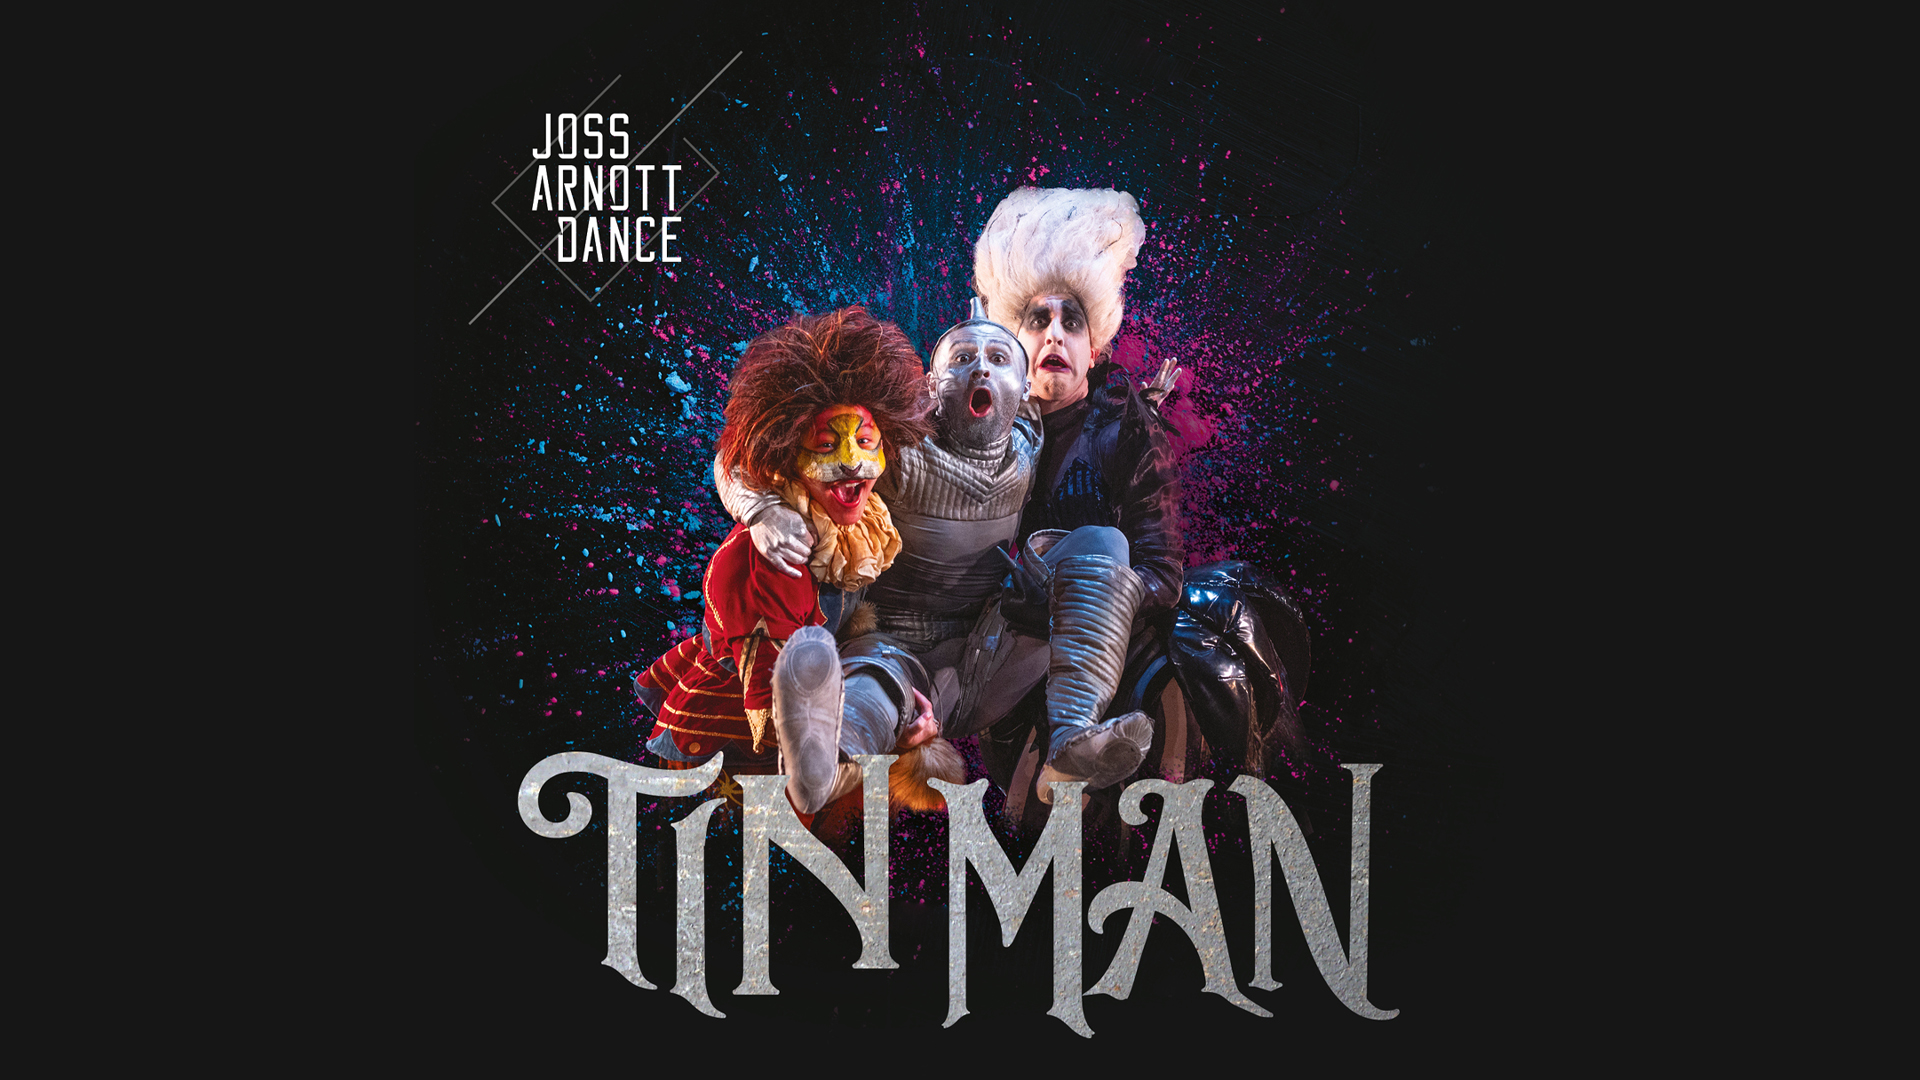 Poster for the Joss Arnott Dance production of 'Tin Man'.